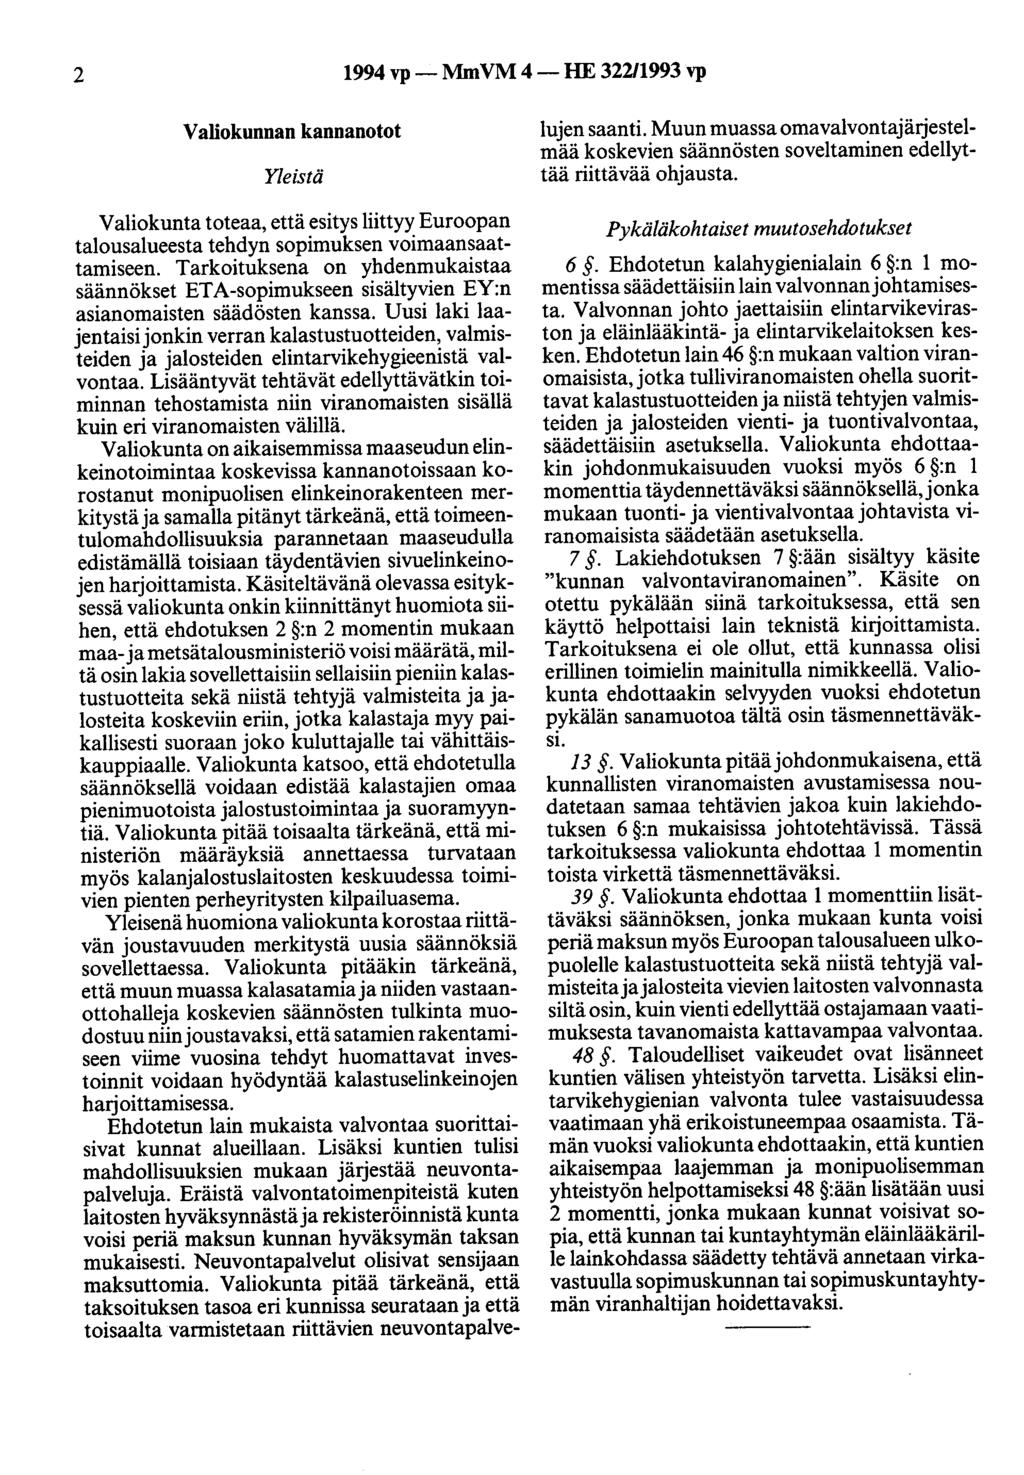 2 1994 vp- MmVM 4-HE 32211993 vp Valiokunnan kannanotot Yleistä Valiokunta toteaa, että esitys liittyy Euroopan talousalueesta tehdyn sopimuksen voimaansaattamiseen.